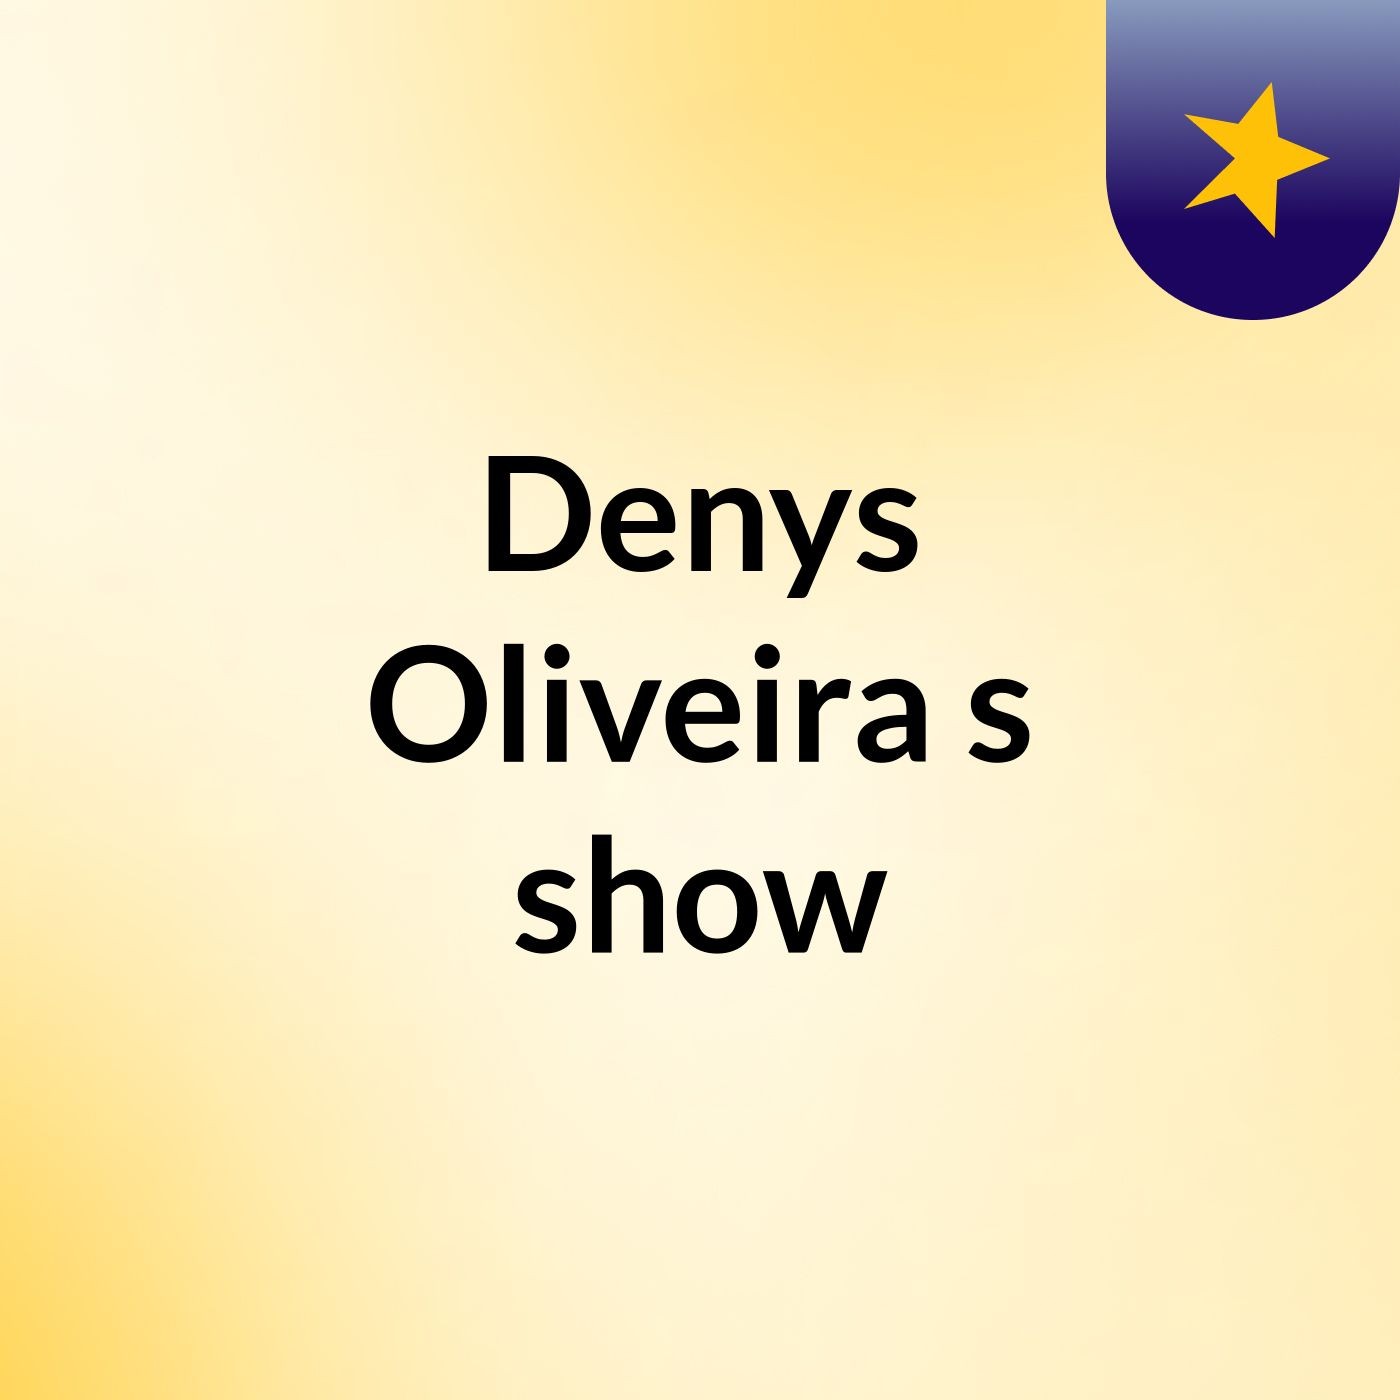 Denys Oliveira's show